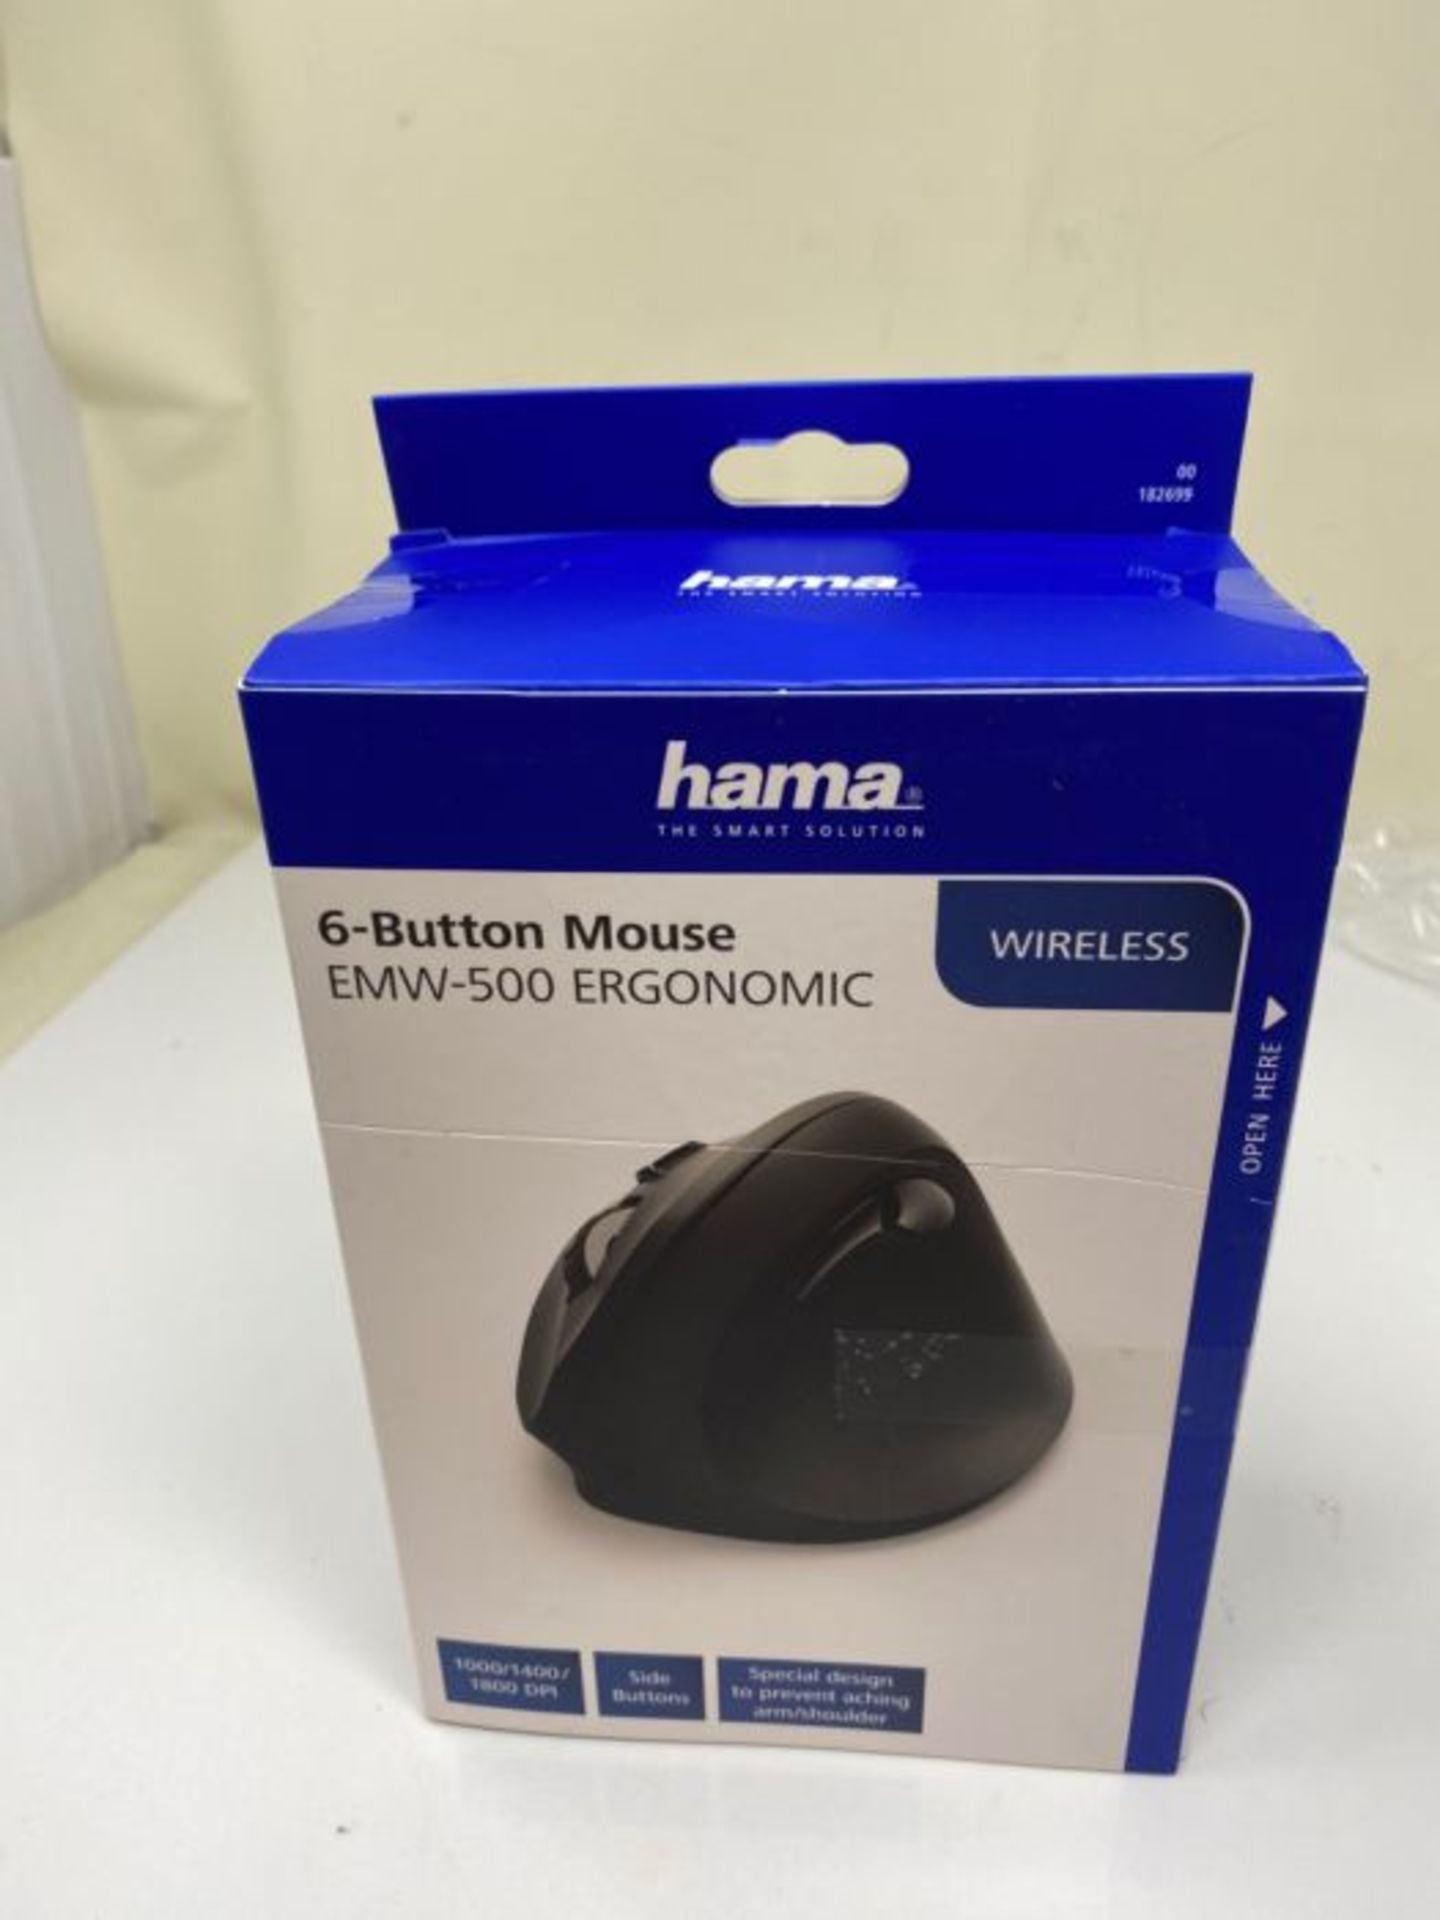 Hama 182699 | 1800 DPI | USB Wireless Ergonomic Mouse | Black - Image 2 of 3